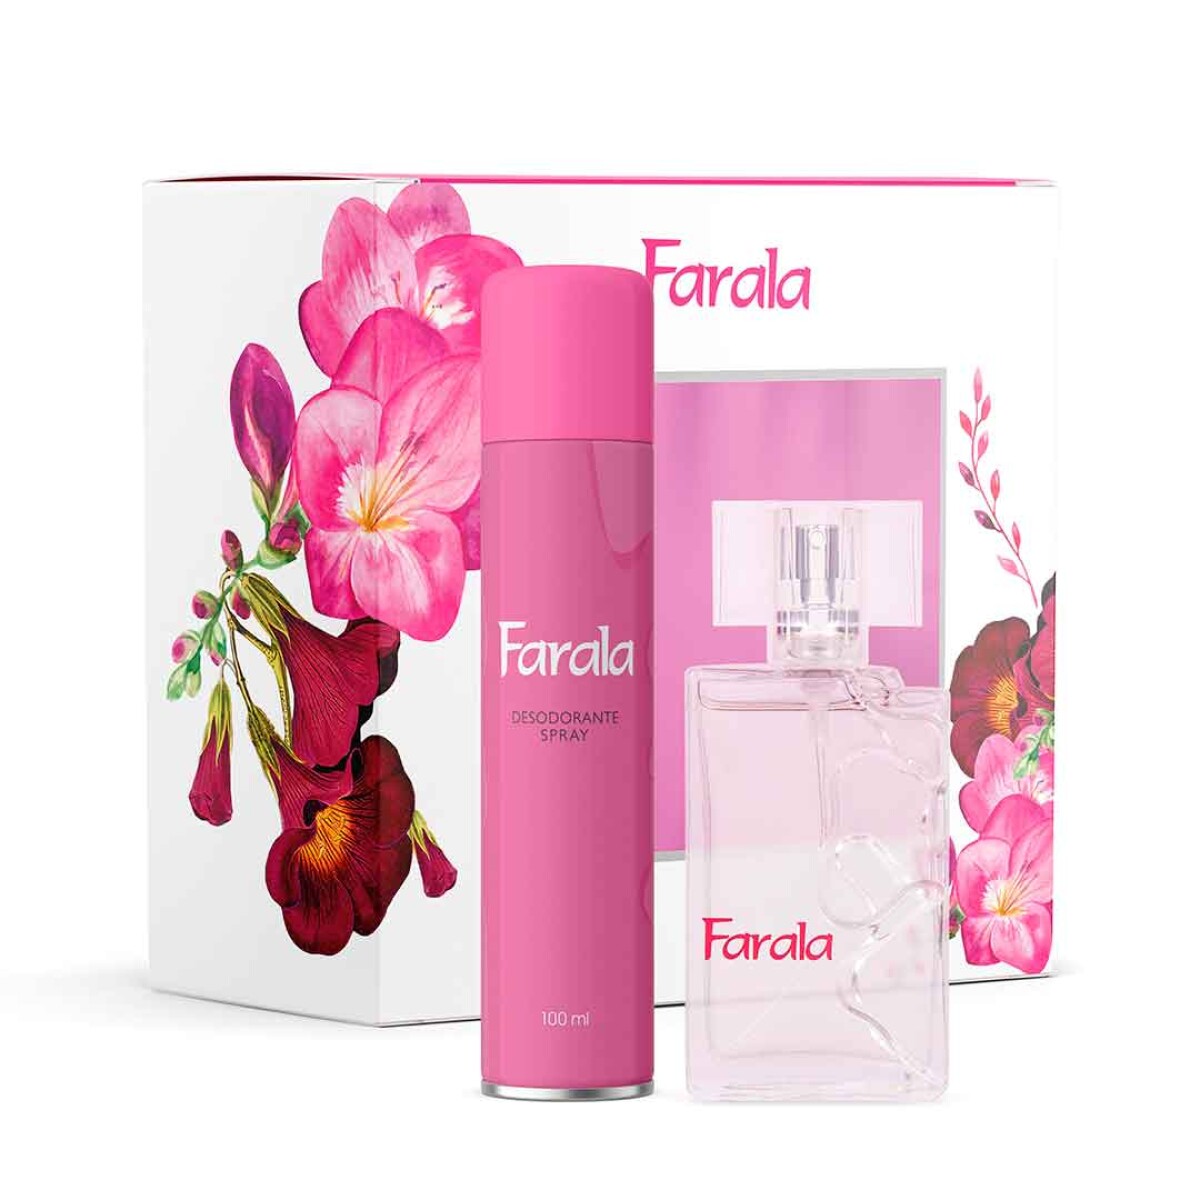 Set Farala Perfume 50ml + Desodorante Spray 100ml - 001 